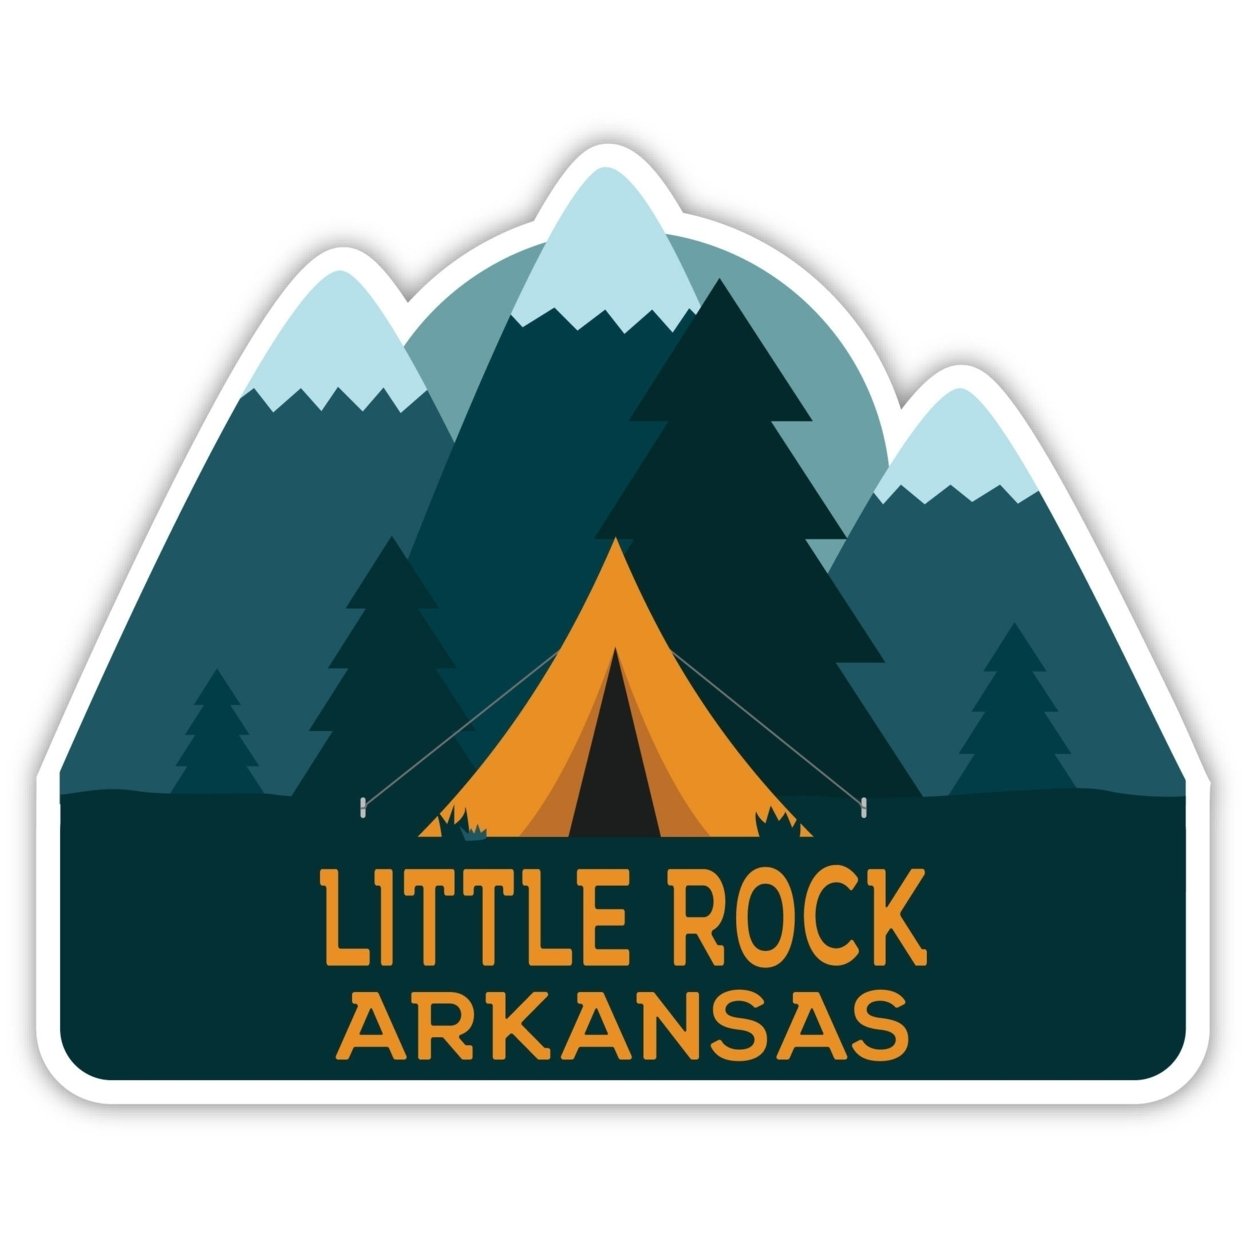 Little Rock Arkansas Souvenir Decorative Stickers (Choose Theme And Size) - 4-Inch, Tent